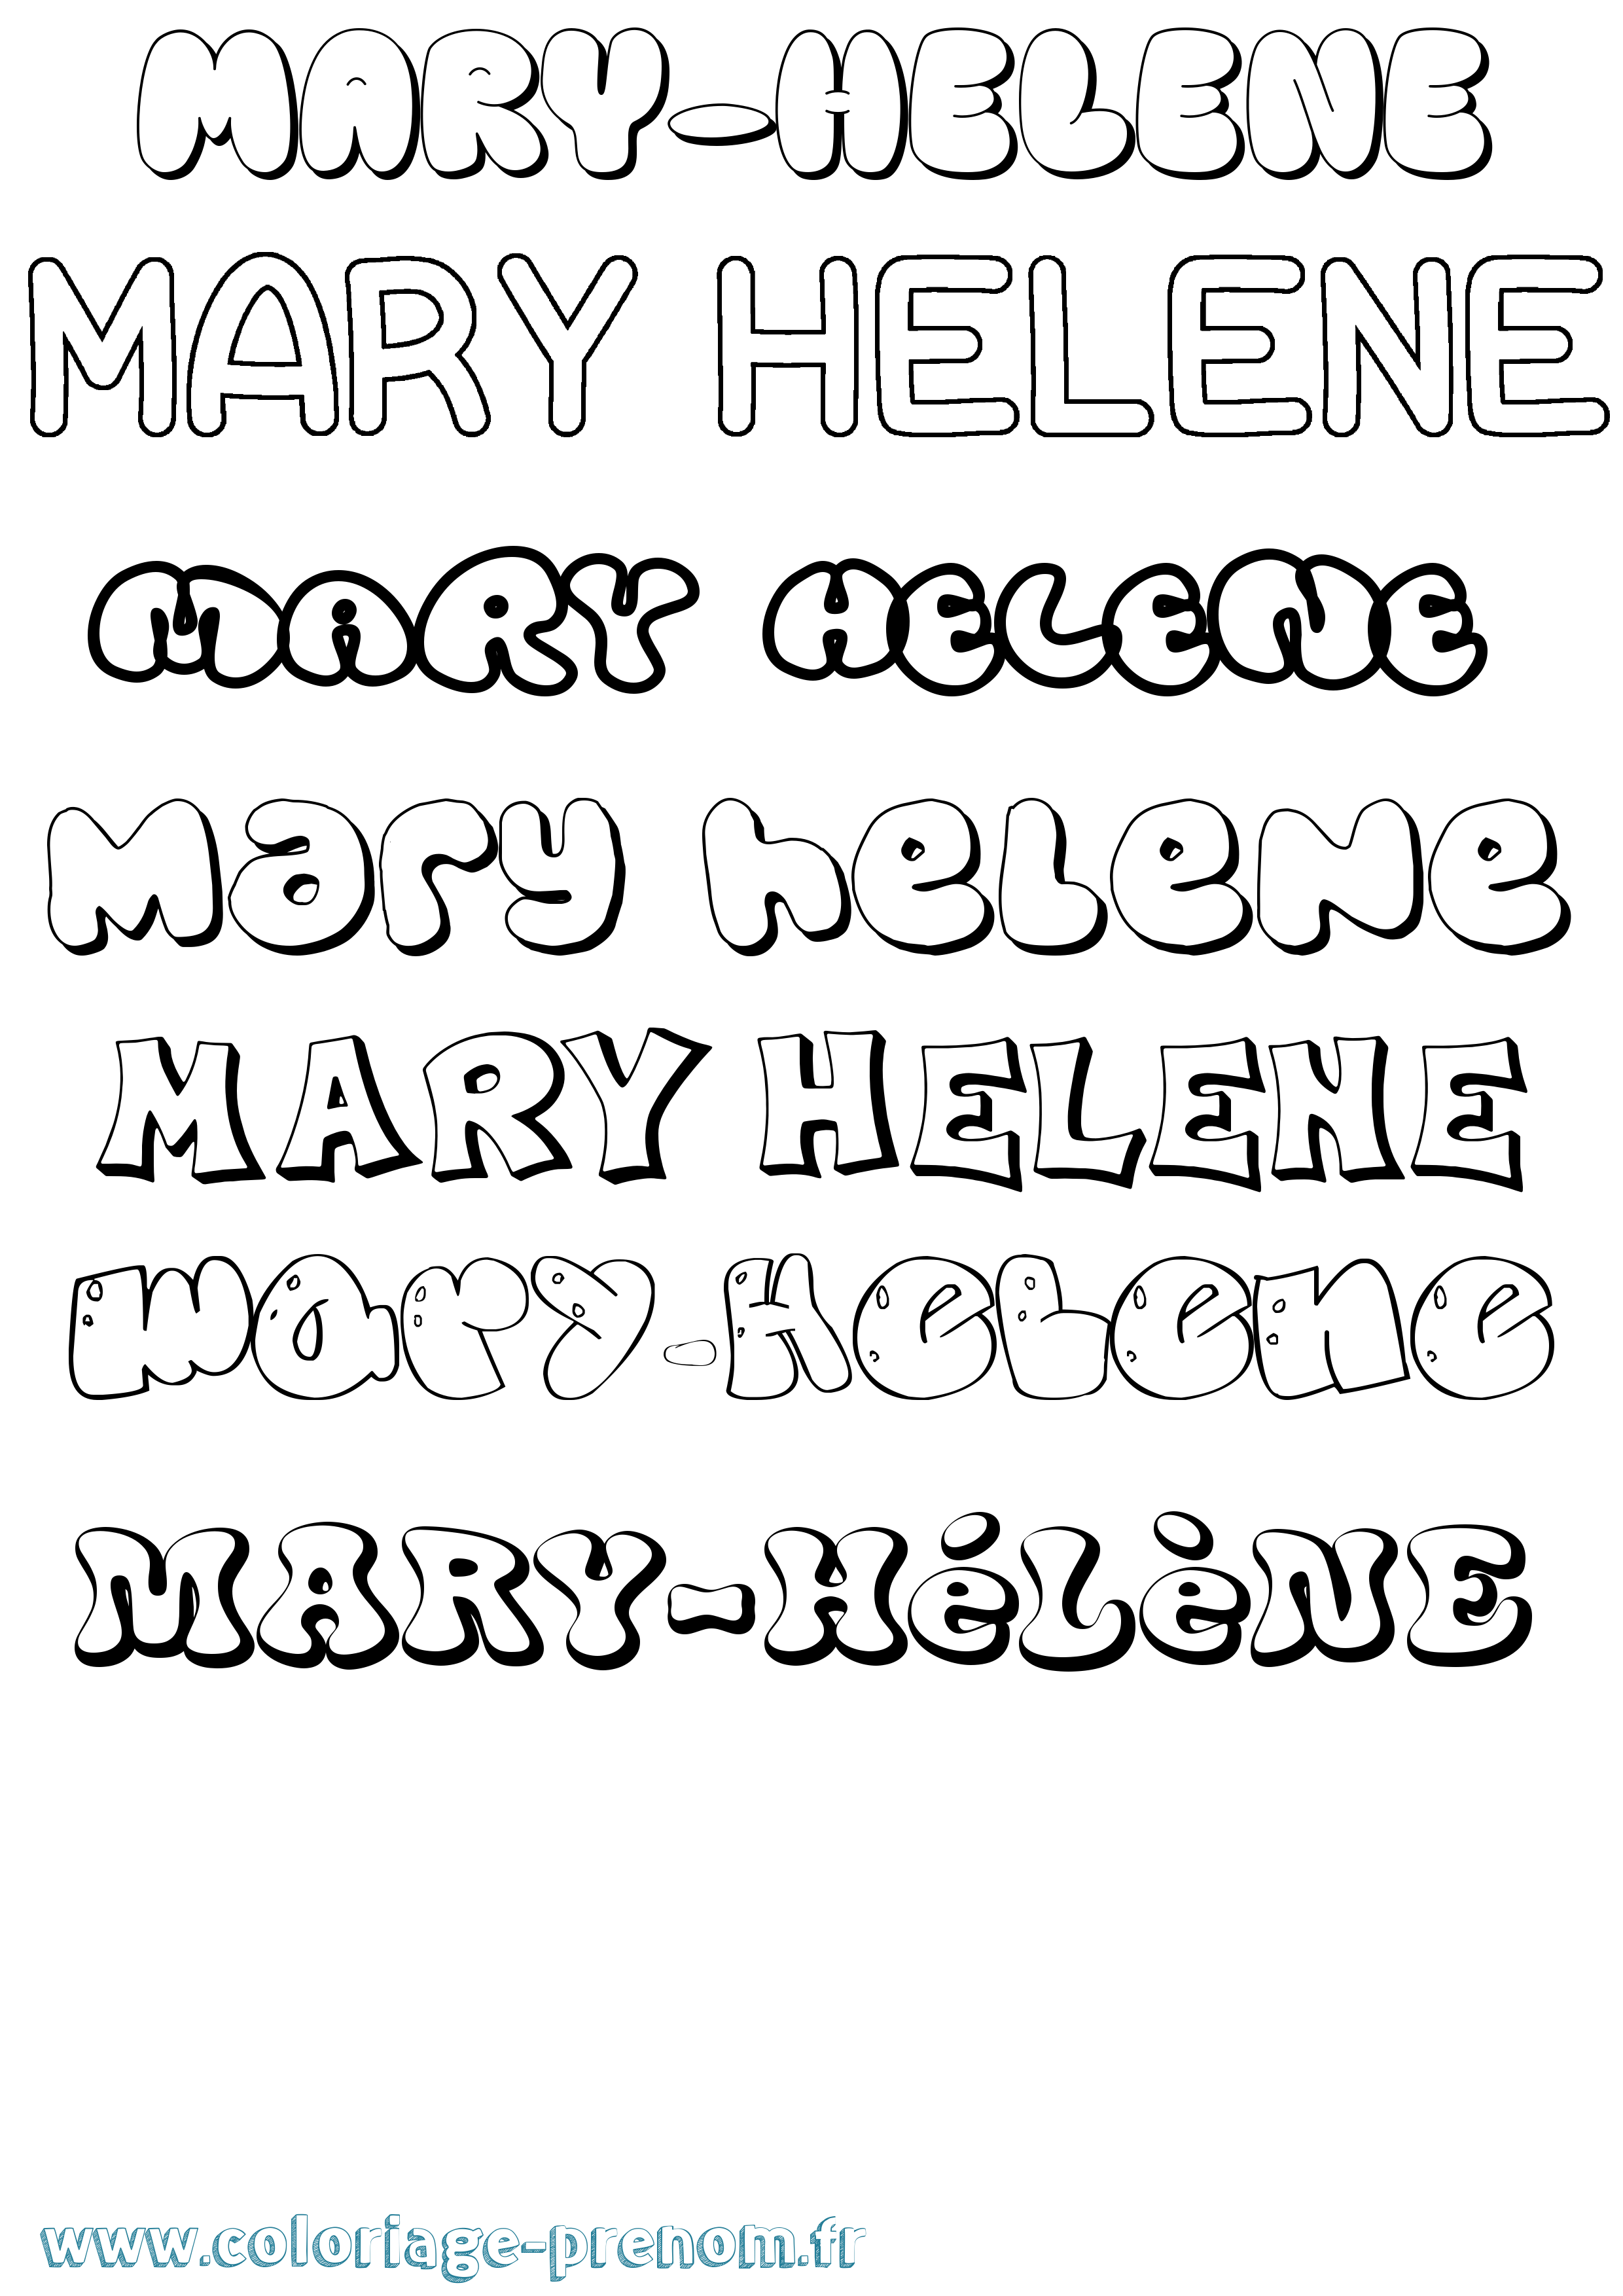 Coloriage prénom Mary-Hélène Bubble